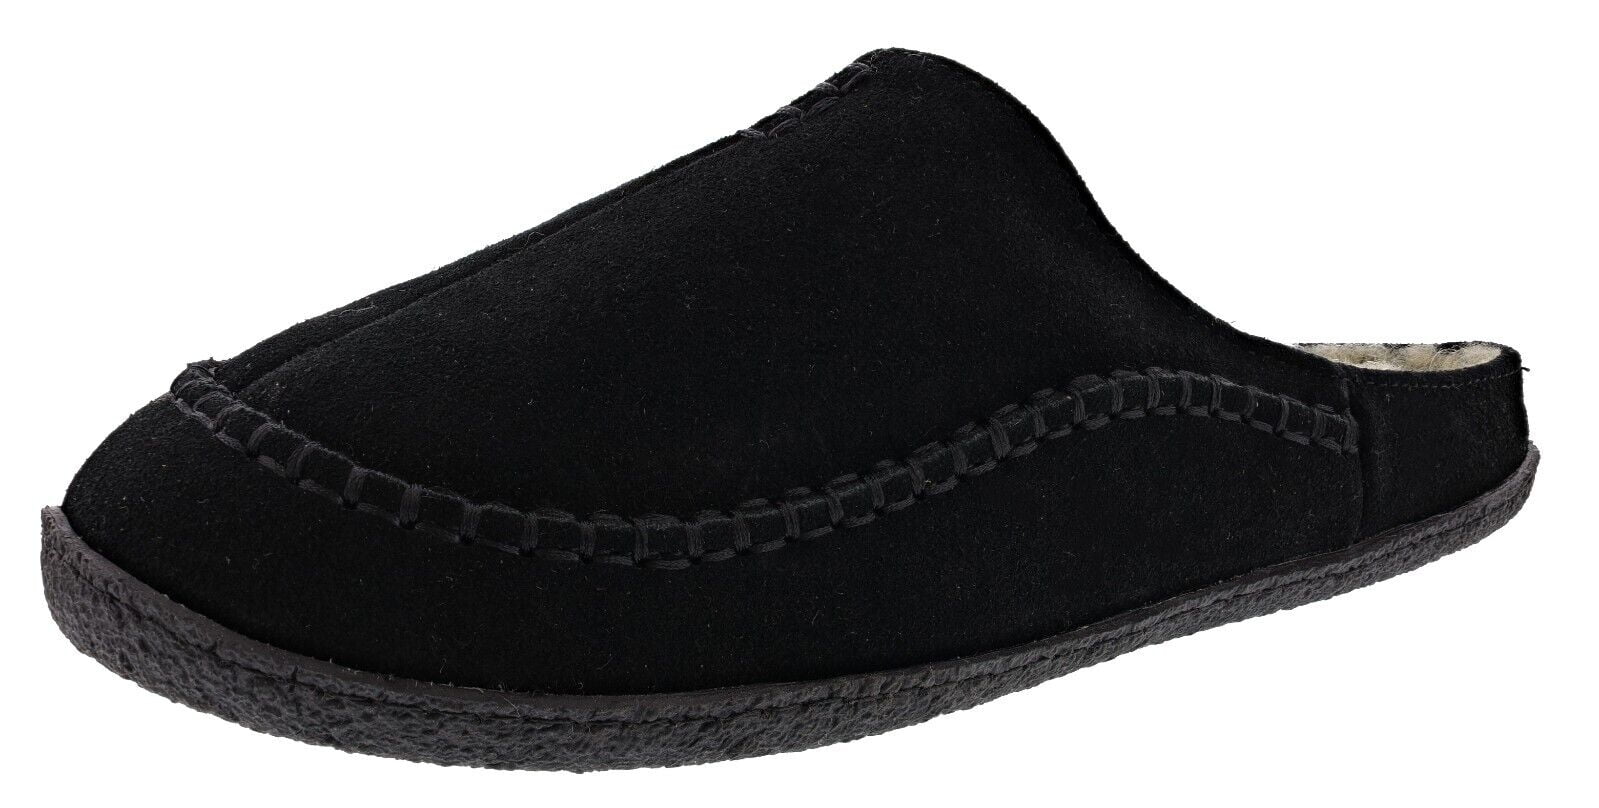 Clarks King Nevis Navy men's slippers sizes 6-12 G 